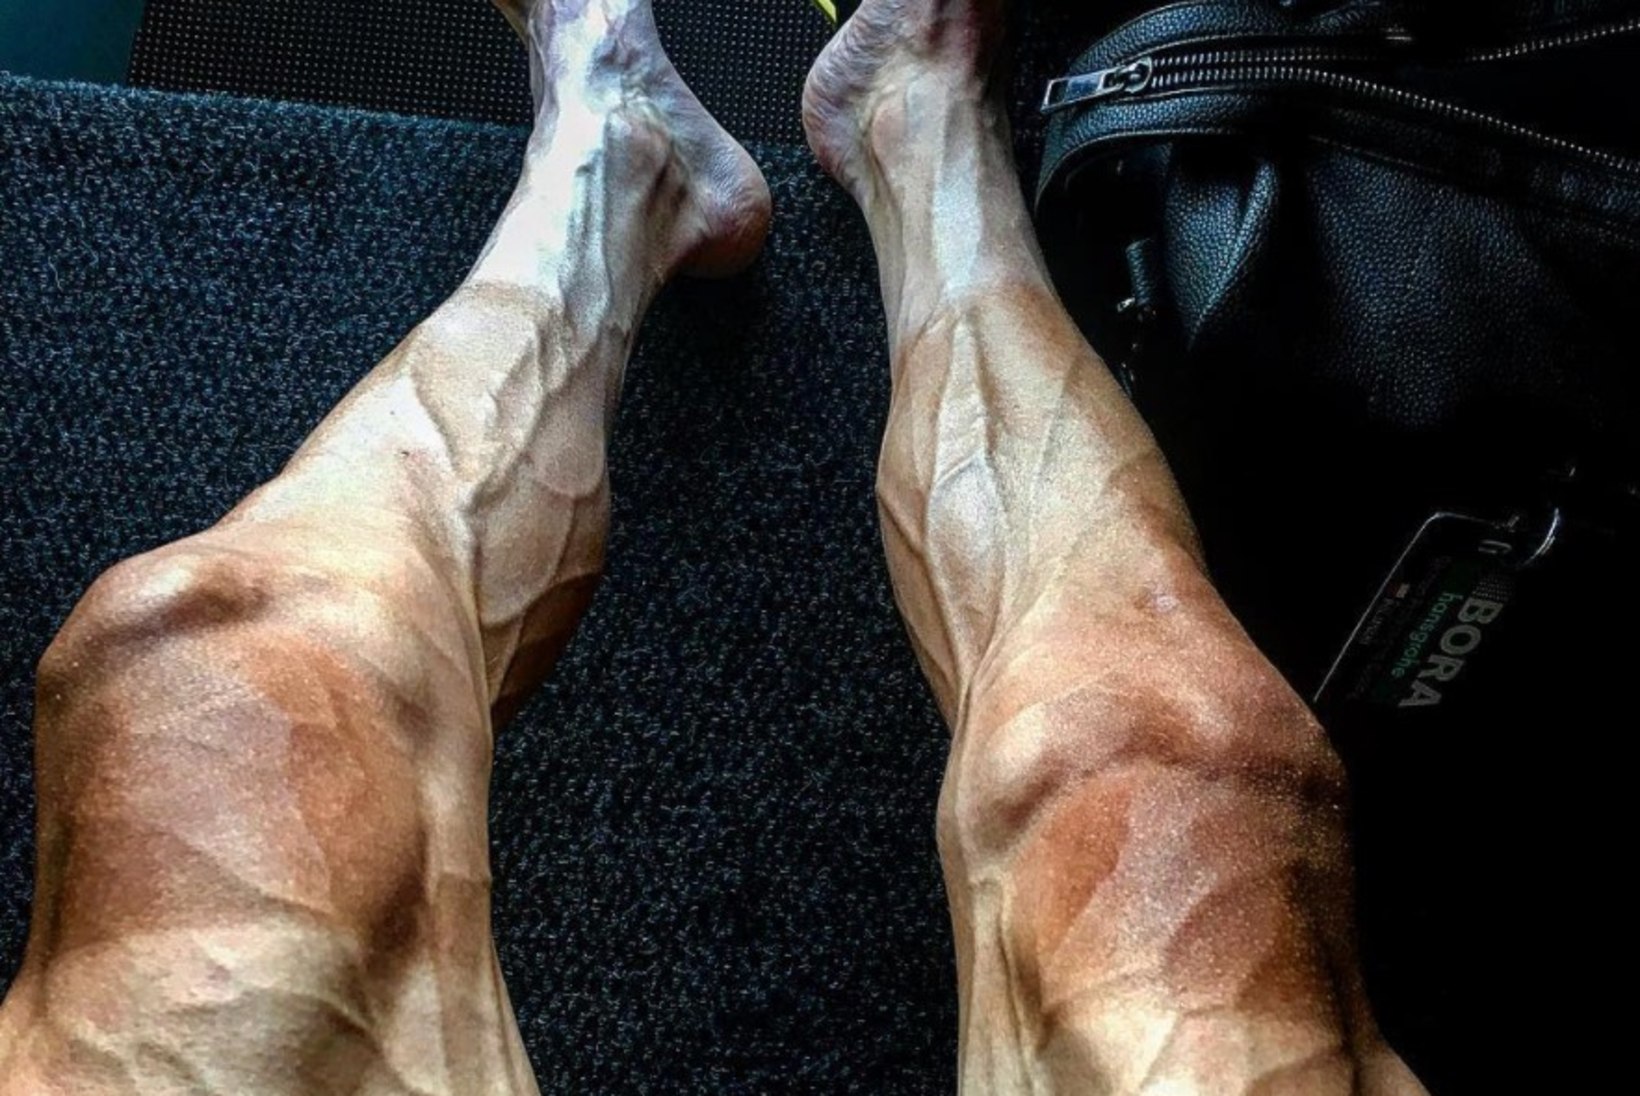 VÕIGAS FOTO | Profiratturi pulbitsevad veresooned on valmis tema jalast justkui välja plahvatama